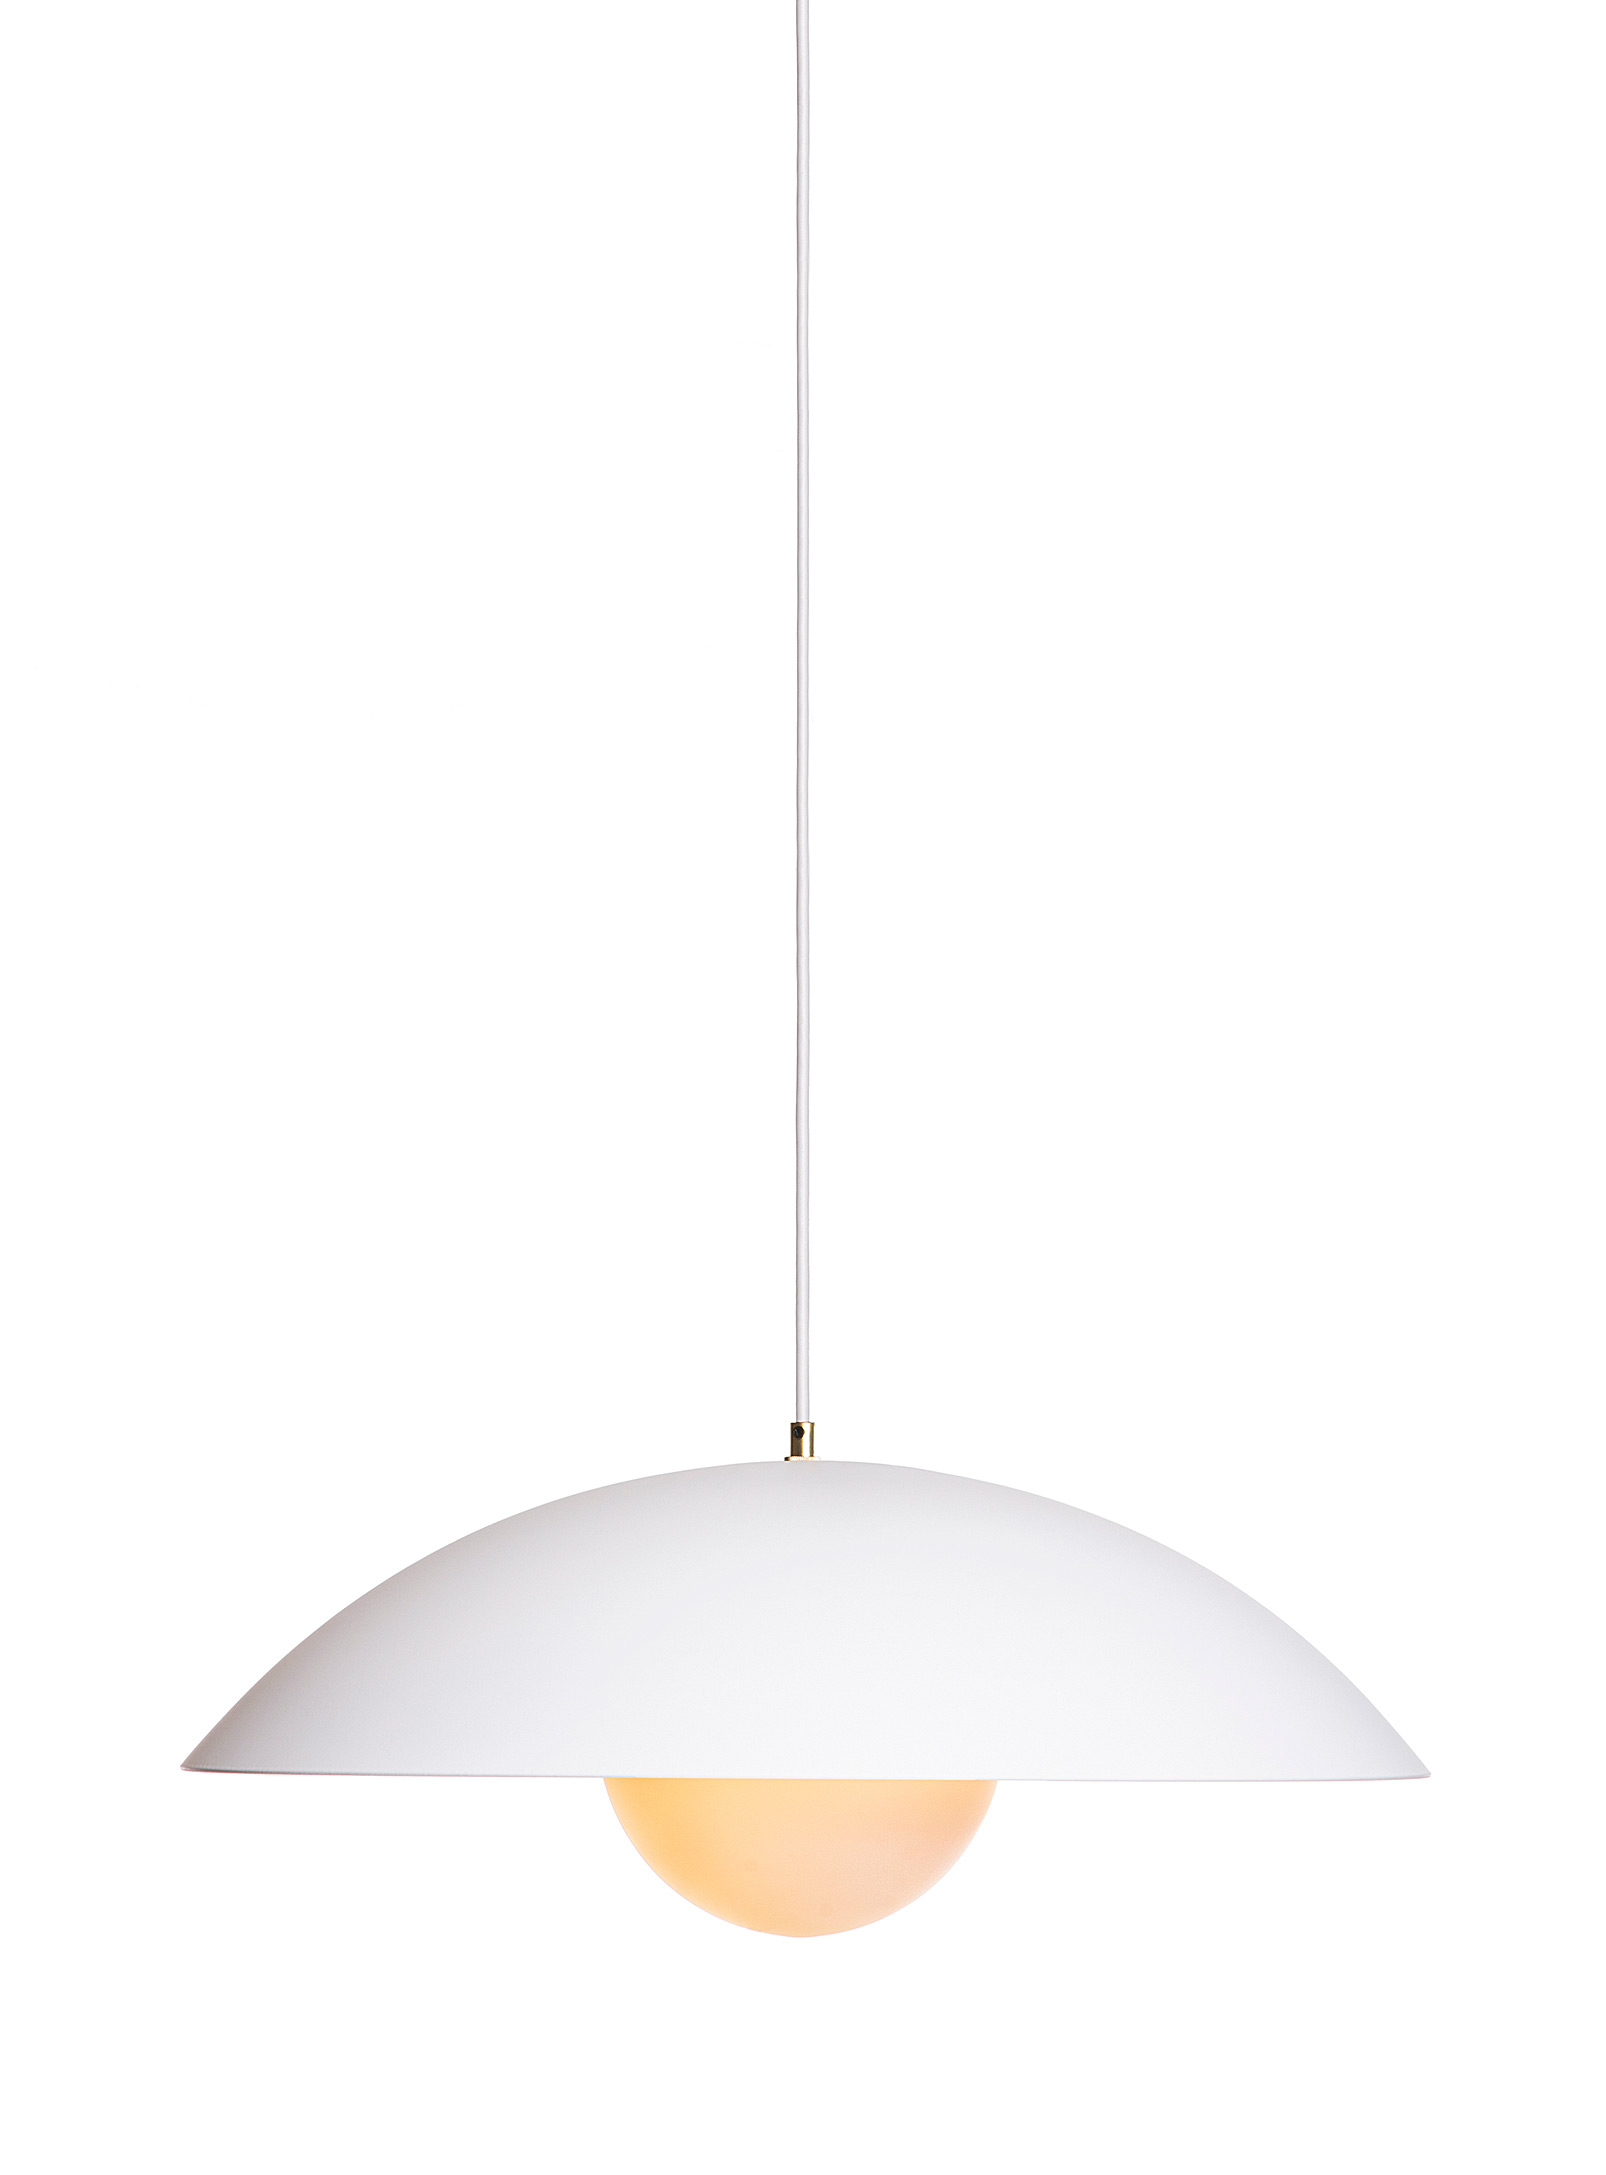 Luminaire Authentik Danoise Hanging Lamp 61 Cm In Diameter In White